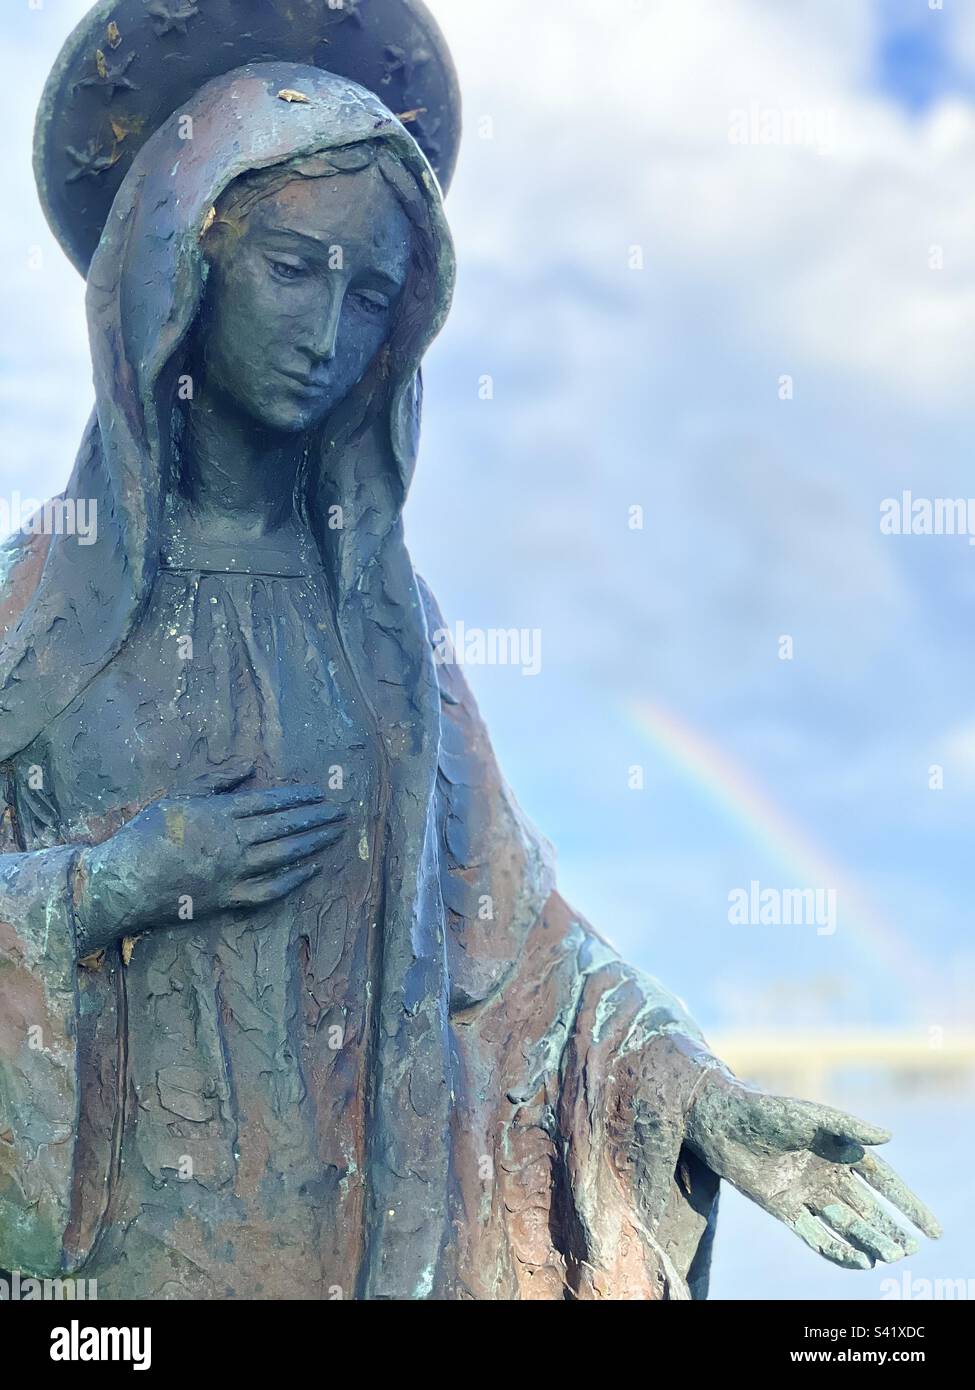 Retrato, telón de fondo del arco iris, estatua de bronce de la Virgen María, coronada con 12 estrellas, mano derecha sobre el corazón, mano izquierda extendida para ayudar, visión de ángulo bajo, mirando en la cara de María Foto de stock